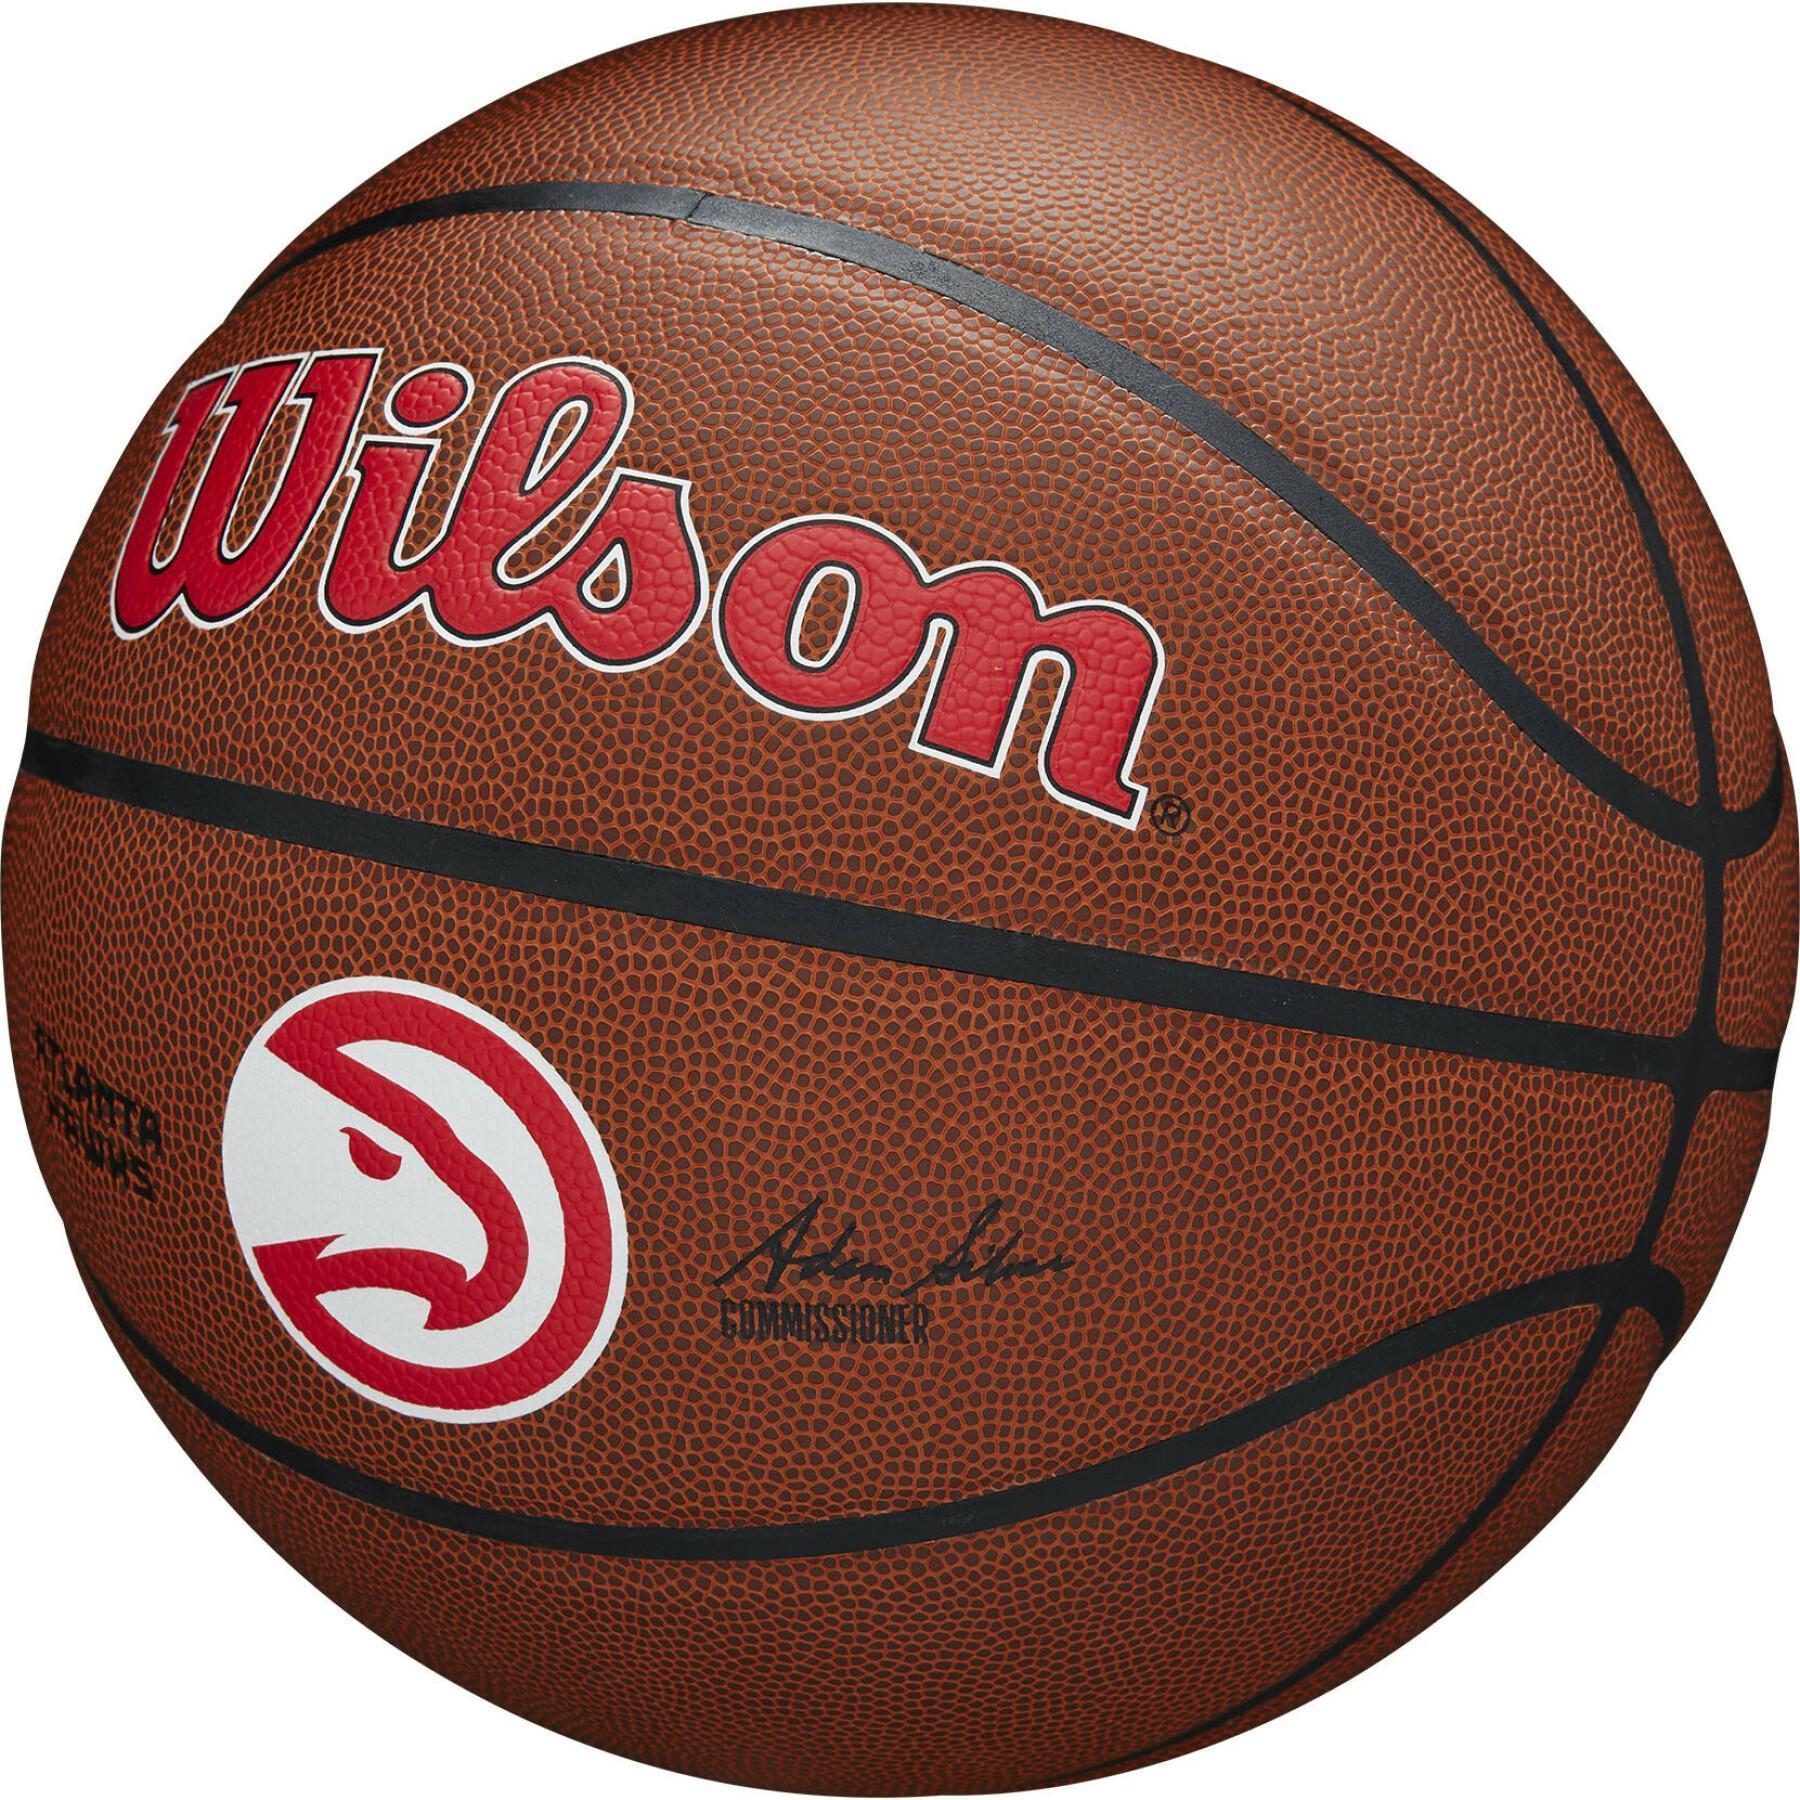 Pallone da basket Atlanta Hawks NBA Team Alliance